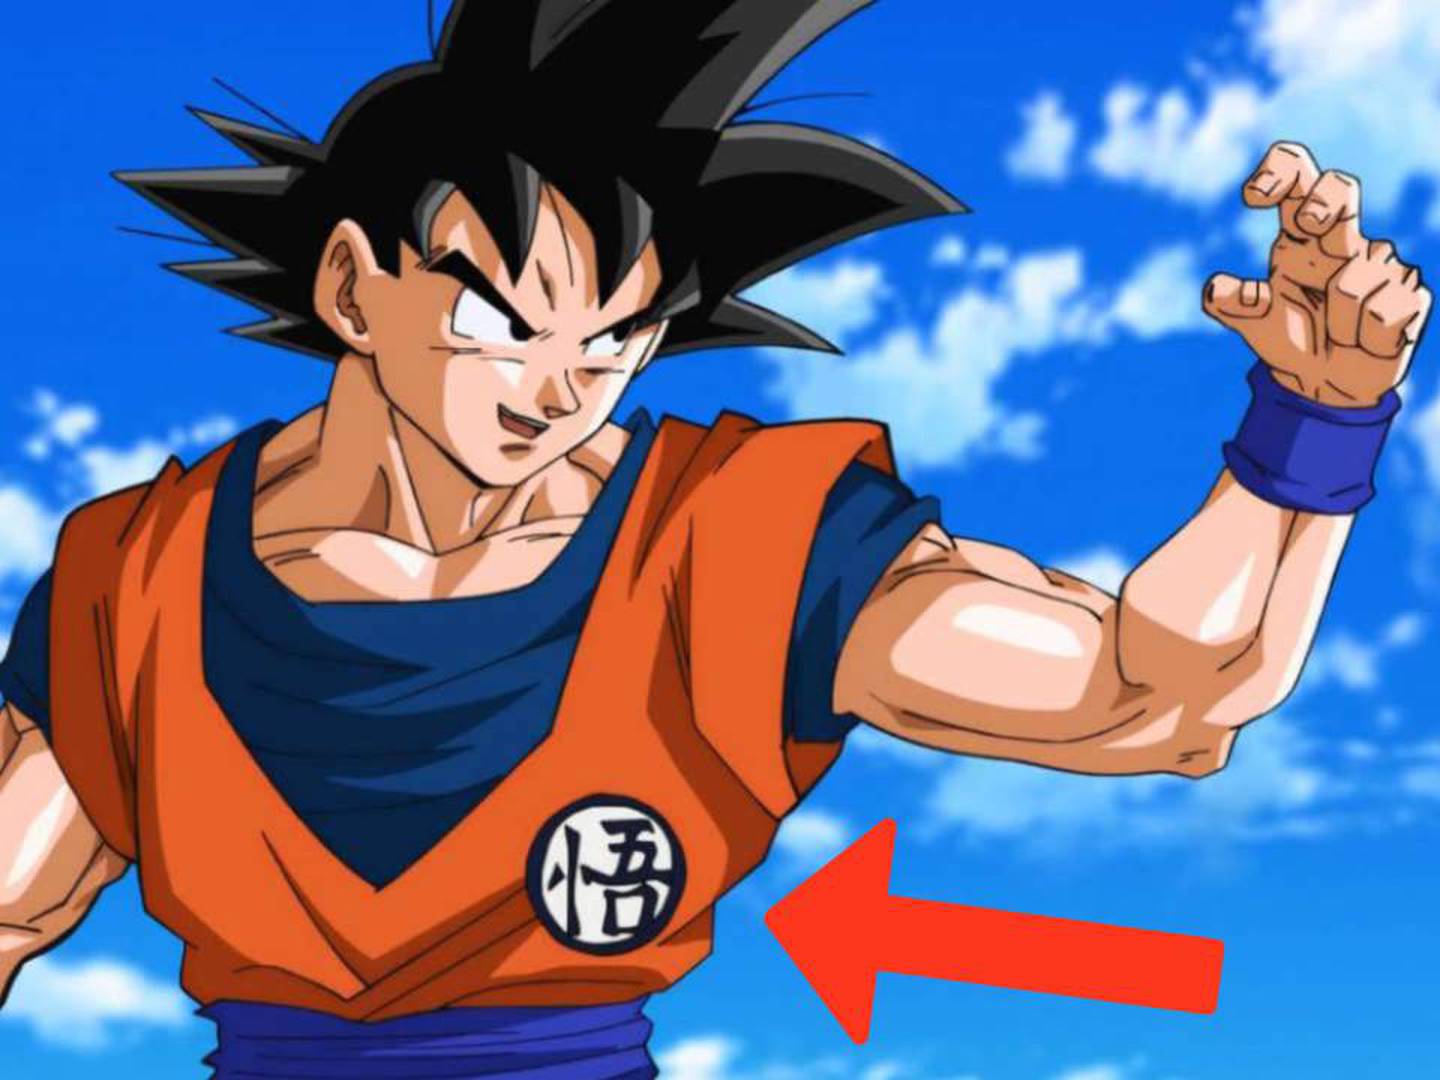 Dragon Ball: esto significan los símbolos que Goku viste en sus uniformes